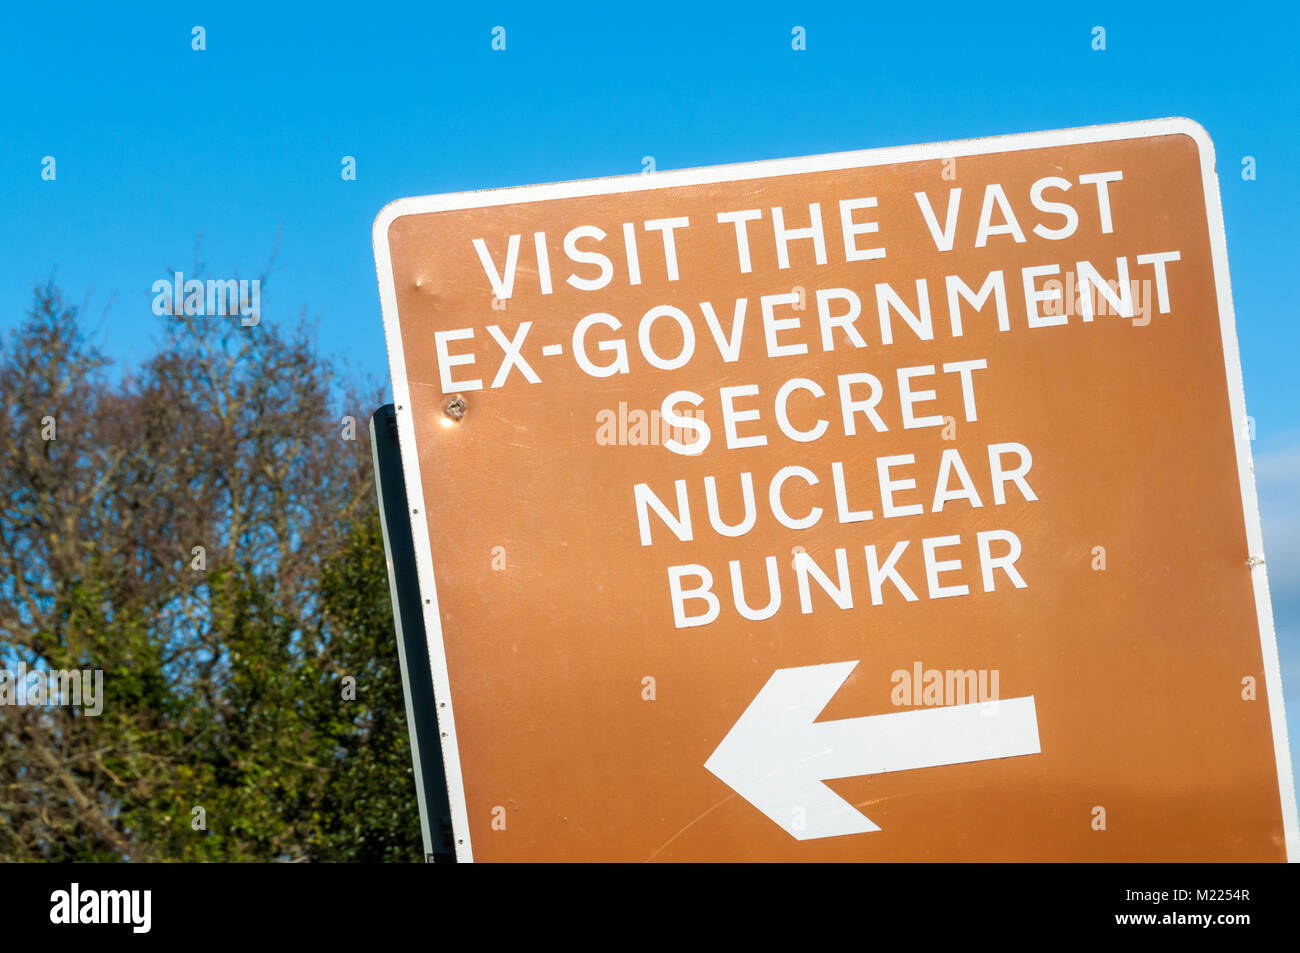 Une attraction touristique brown signe pour l'Kelvedon Hatch Nuclear Bunker secret en Essex Banque D'Images